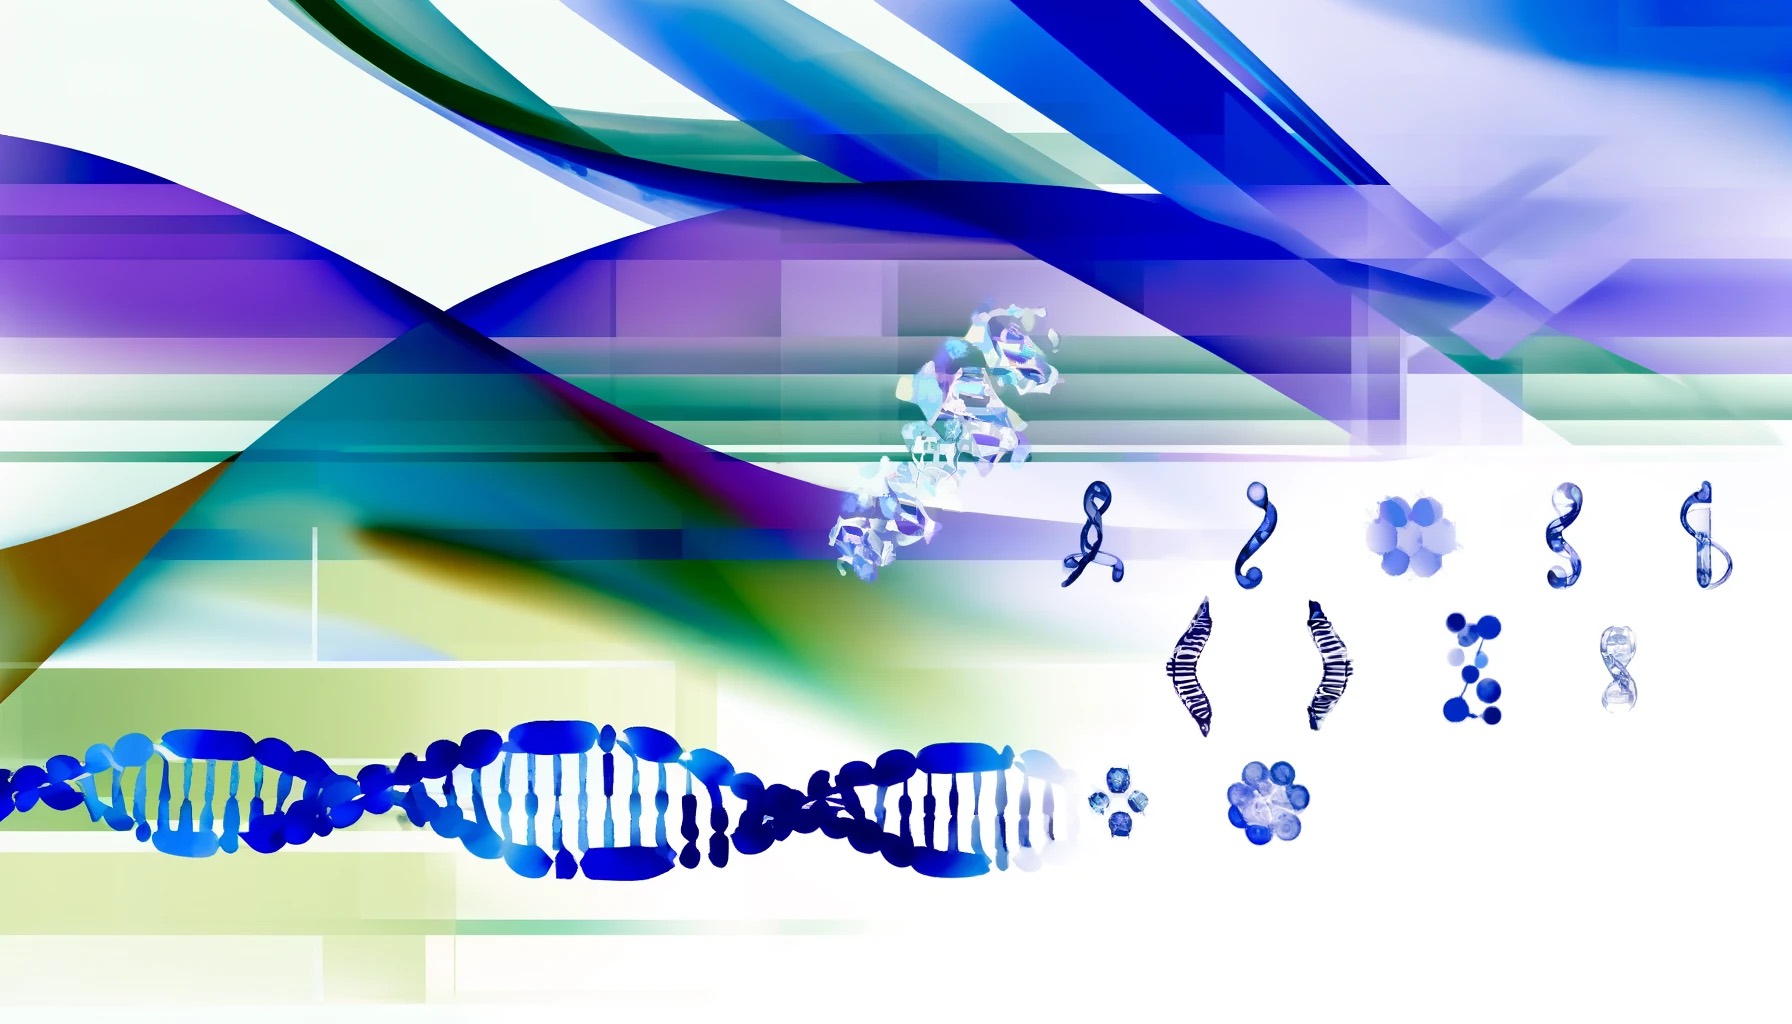 International Genetic Epidemiology Society 2020 image